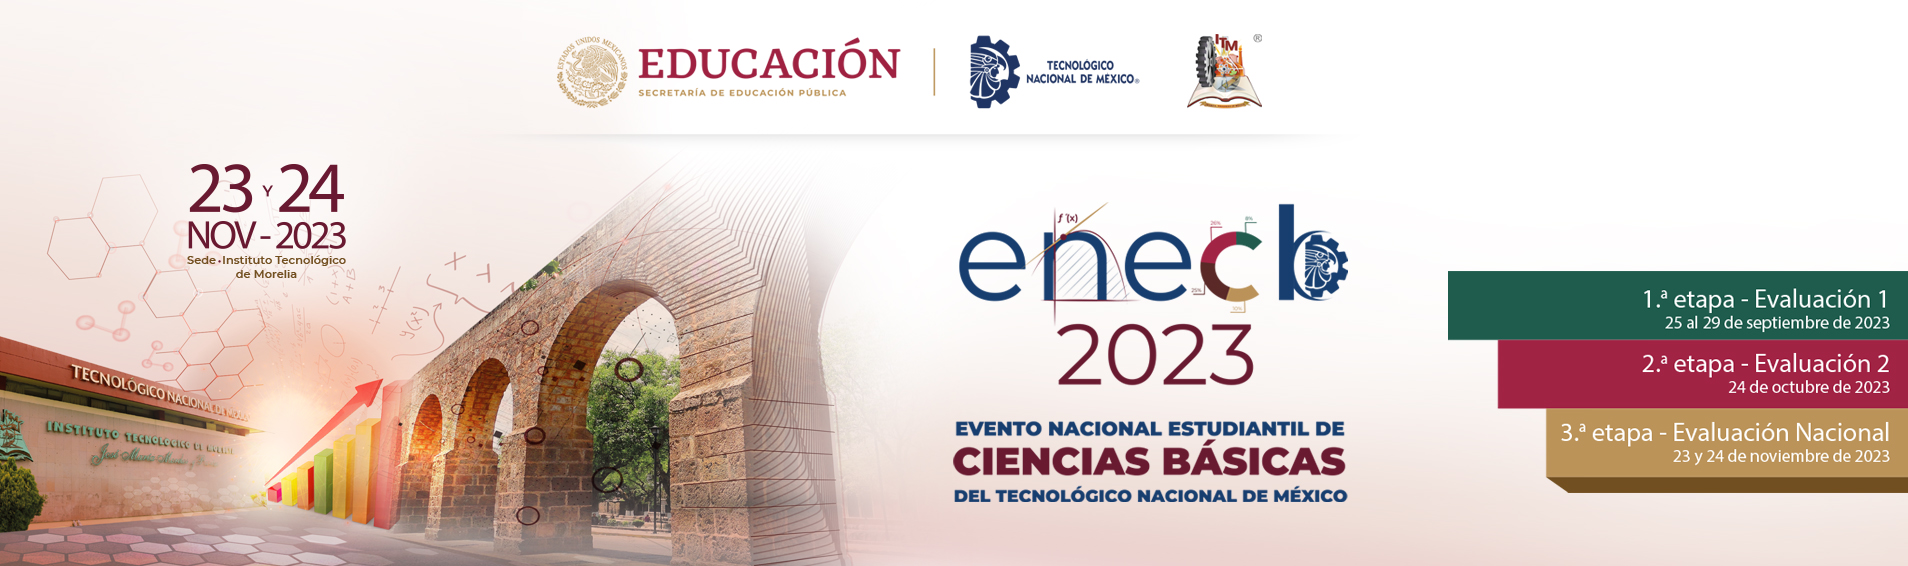 ENECB 2023